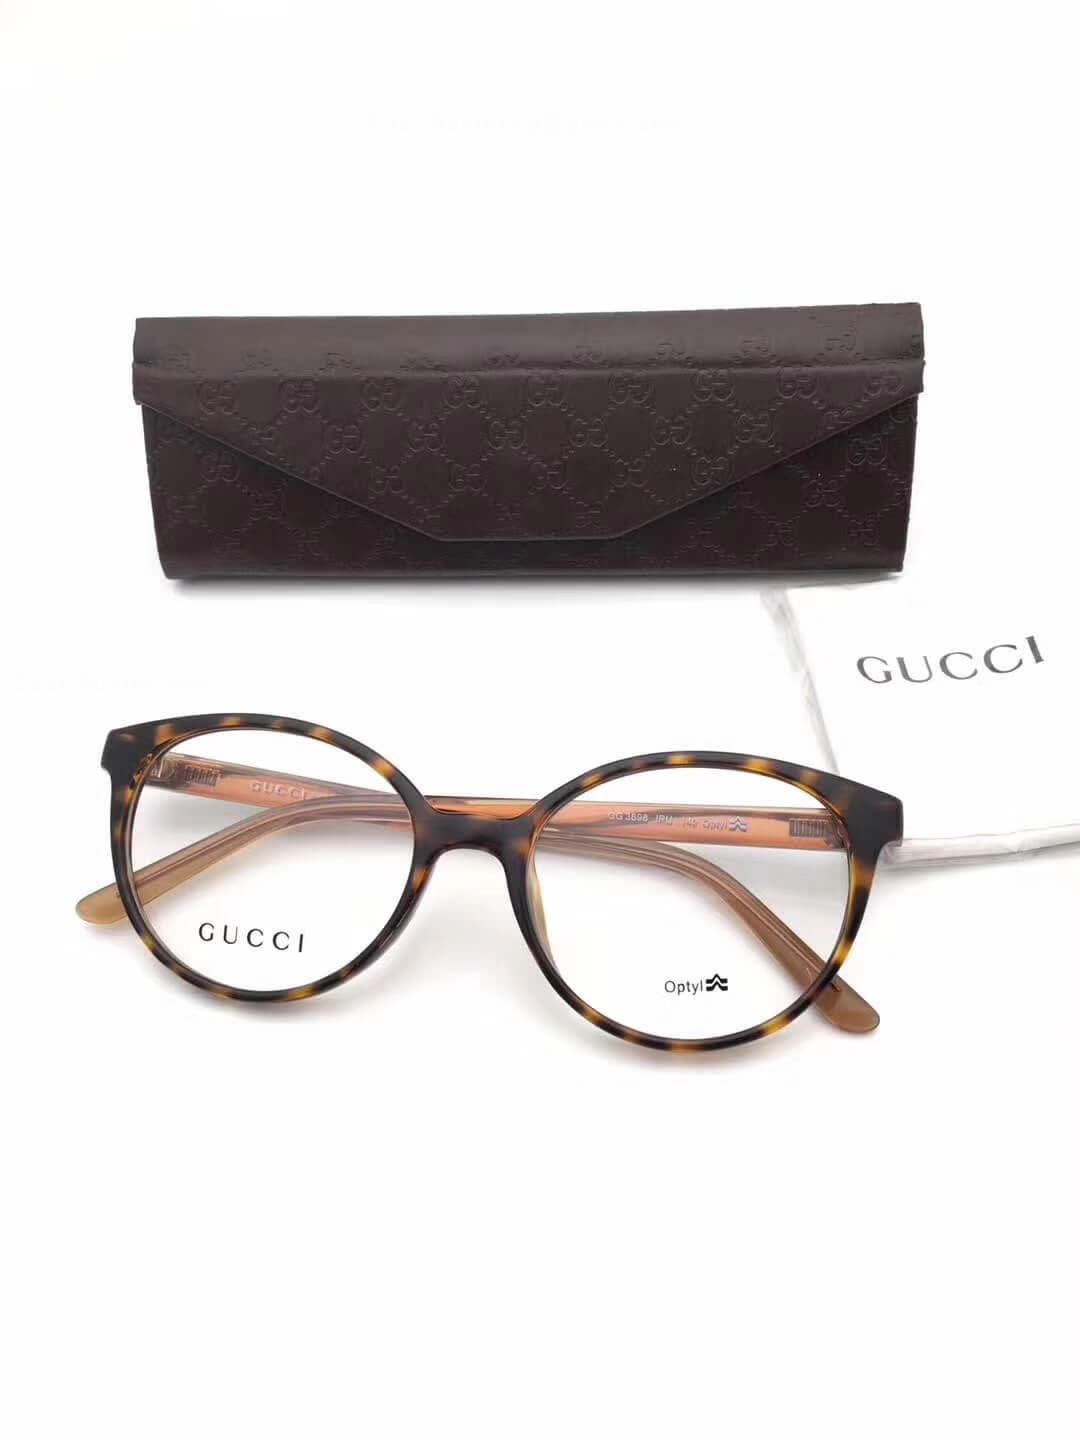 Gucci Sunglasses 183817